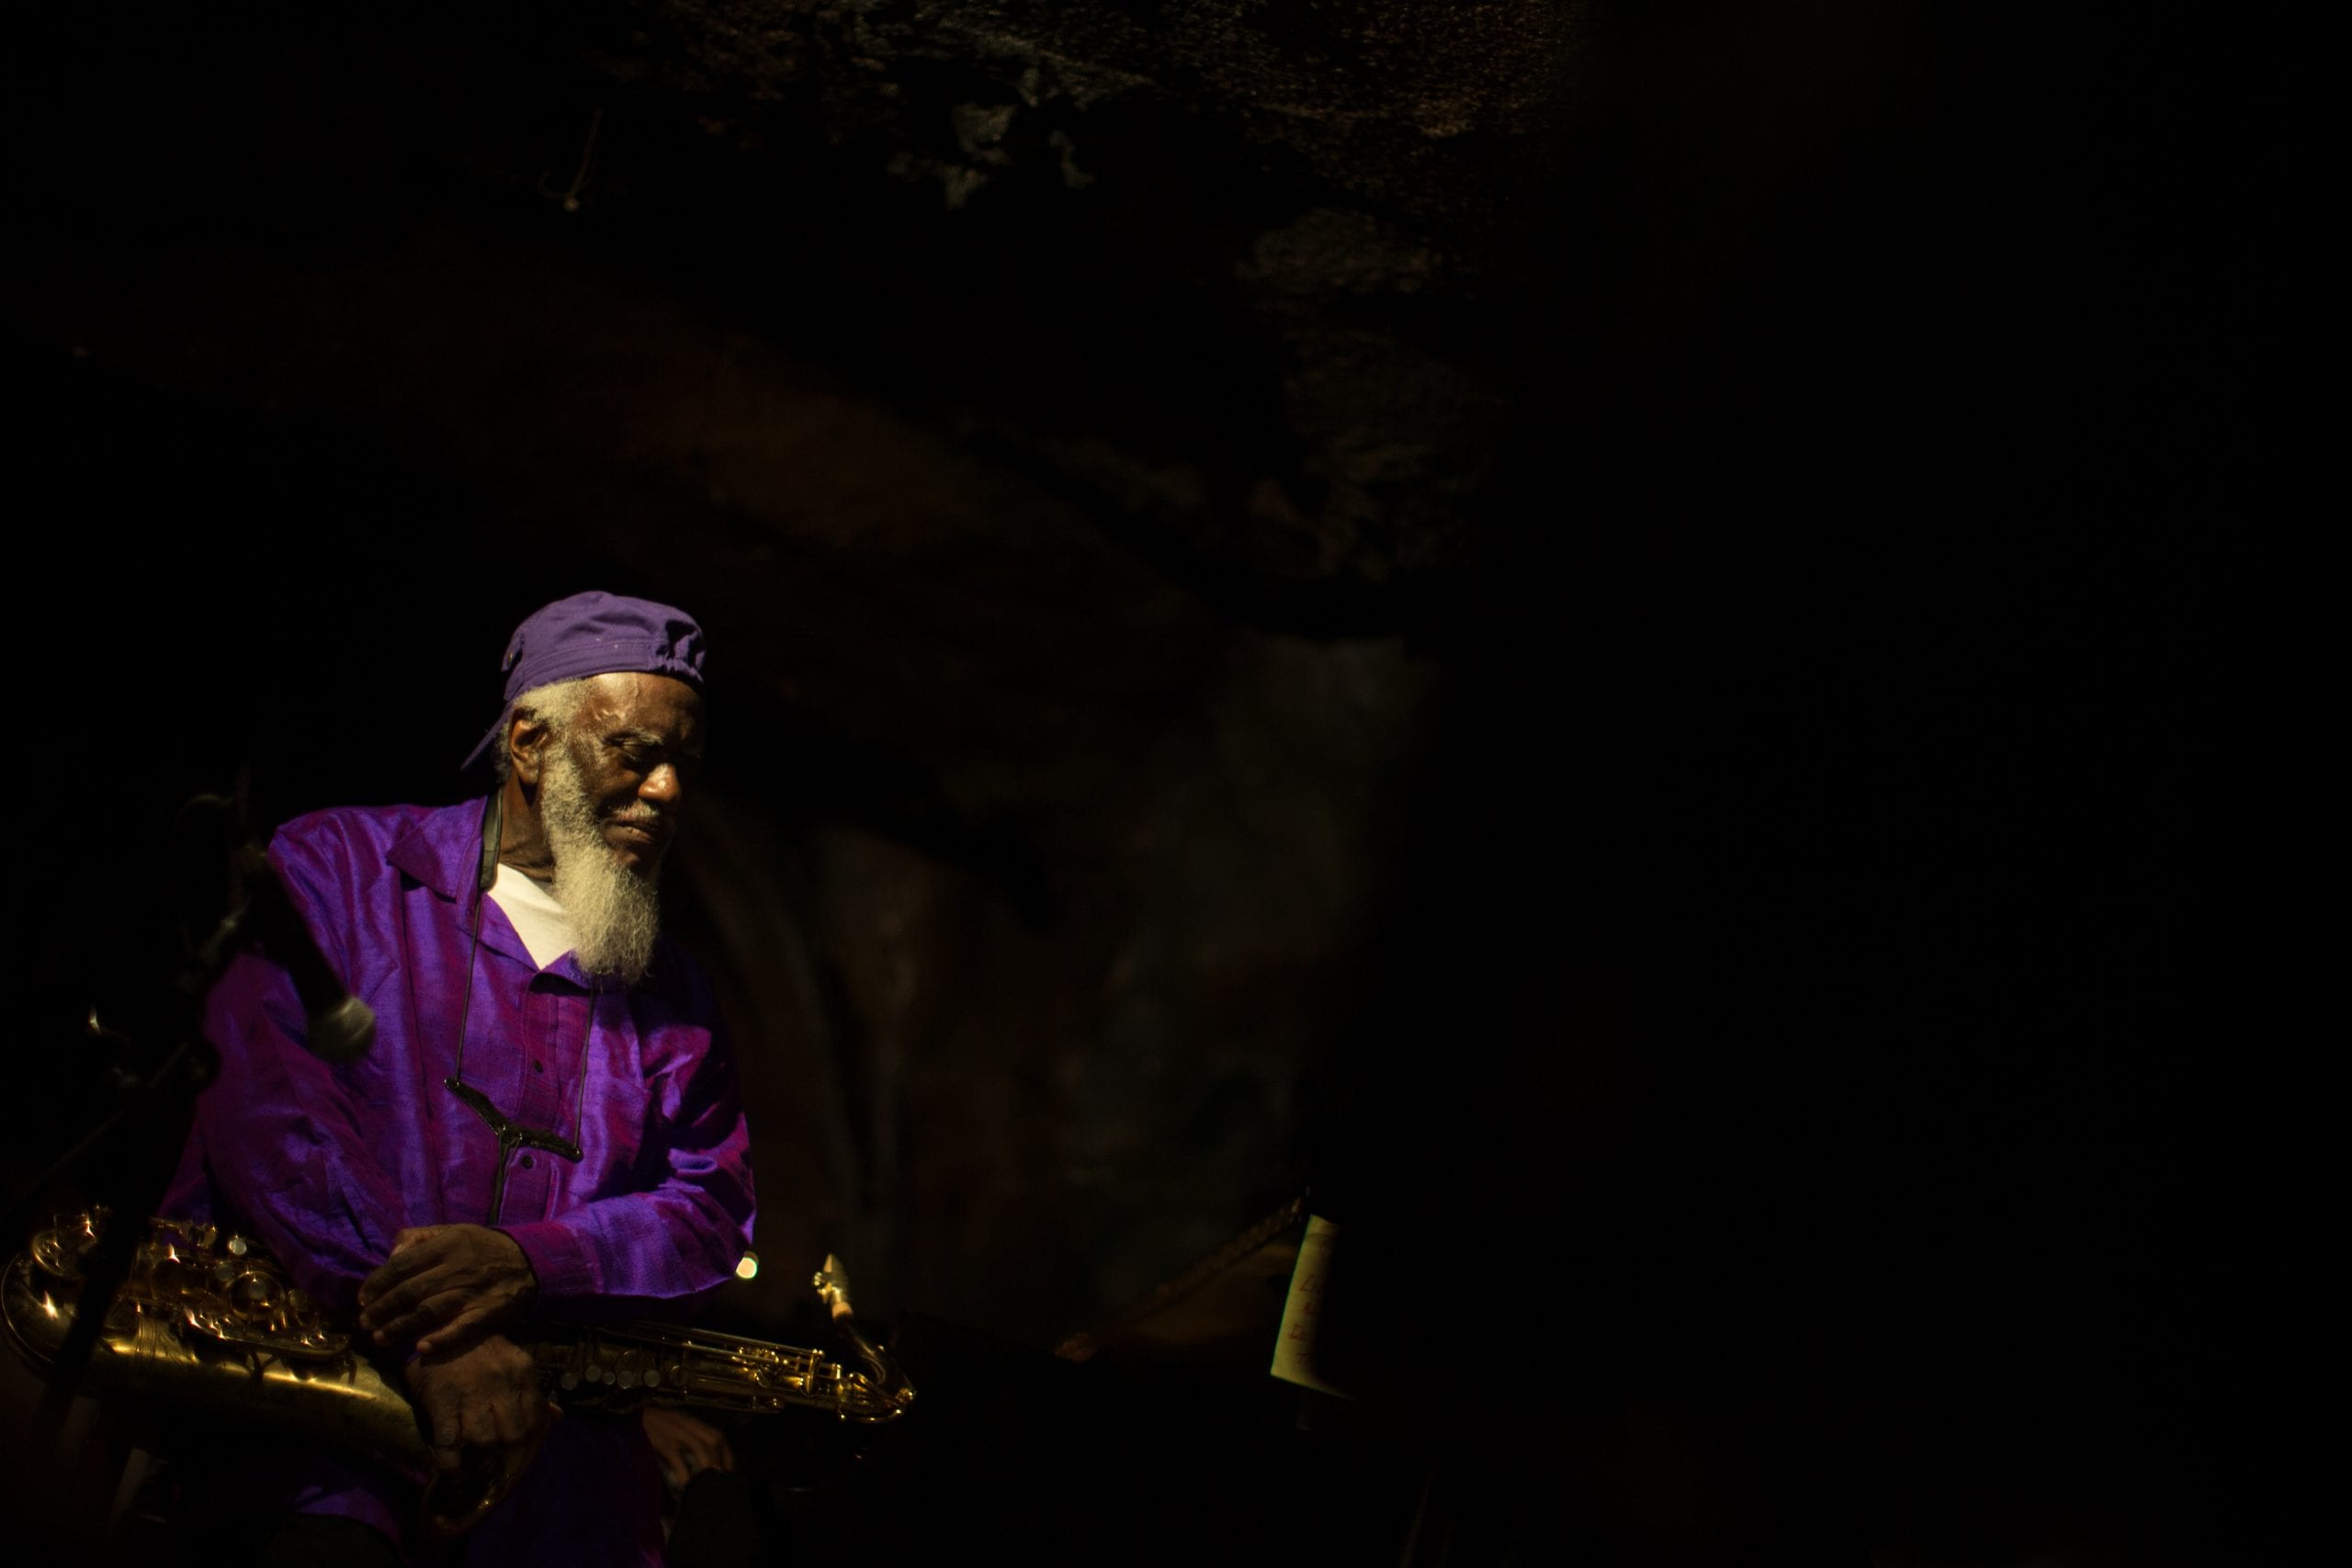 Pharoah Sanders performs at Bohemian Caverns. David L. McDuffie/CapitalBop